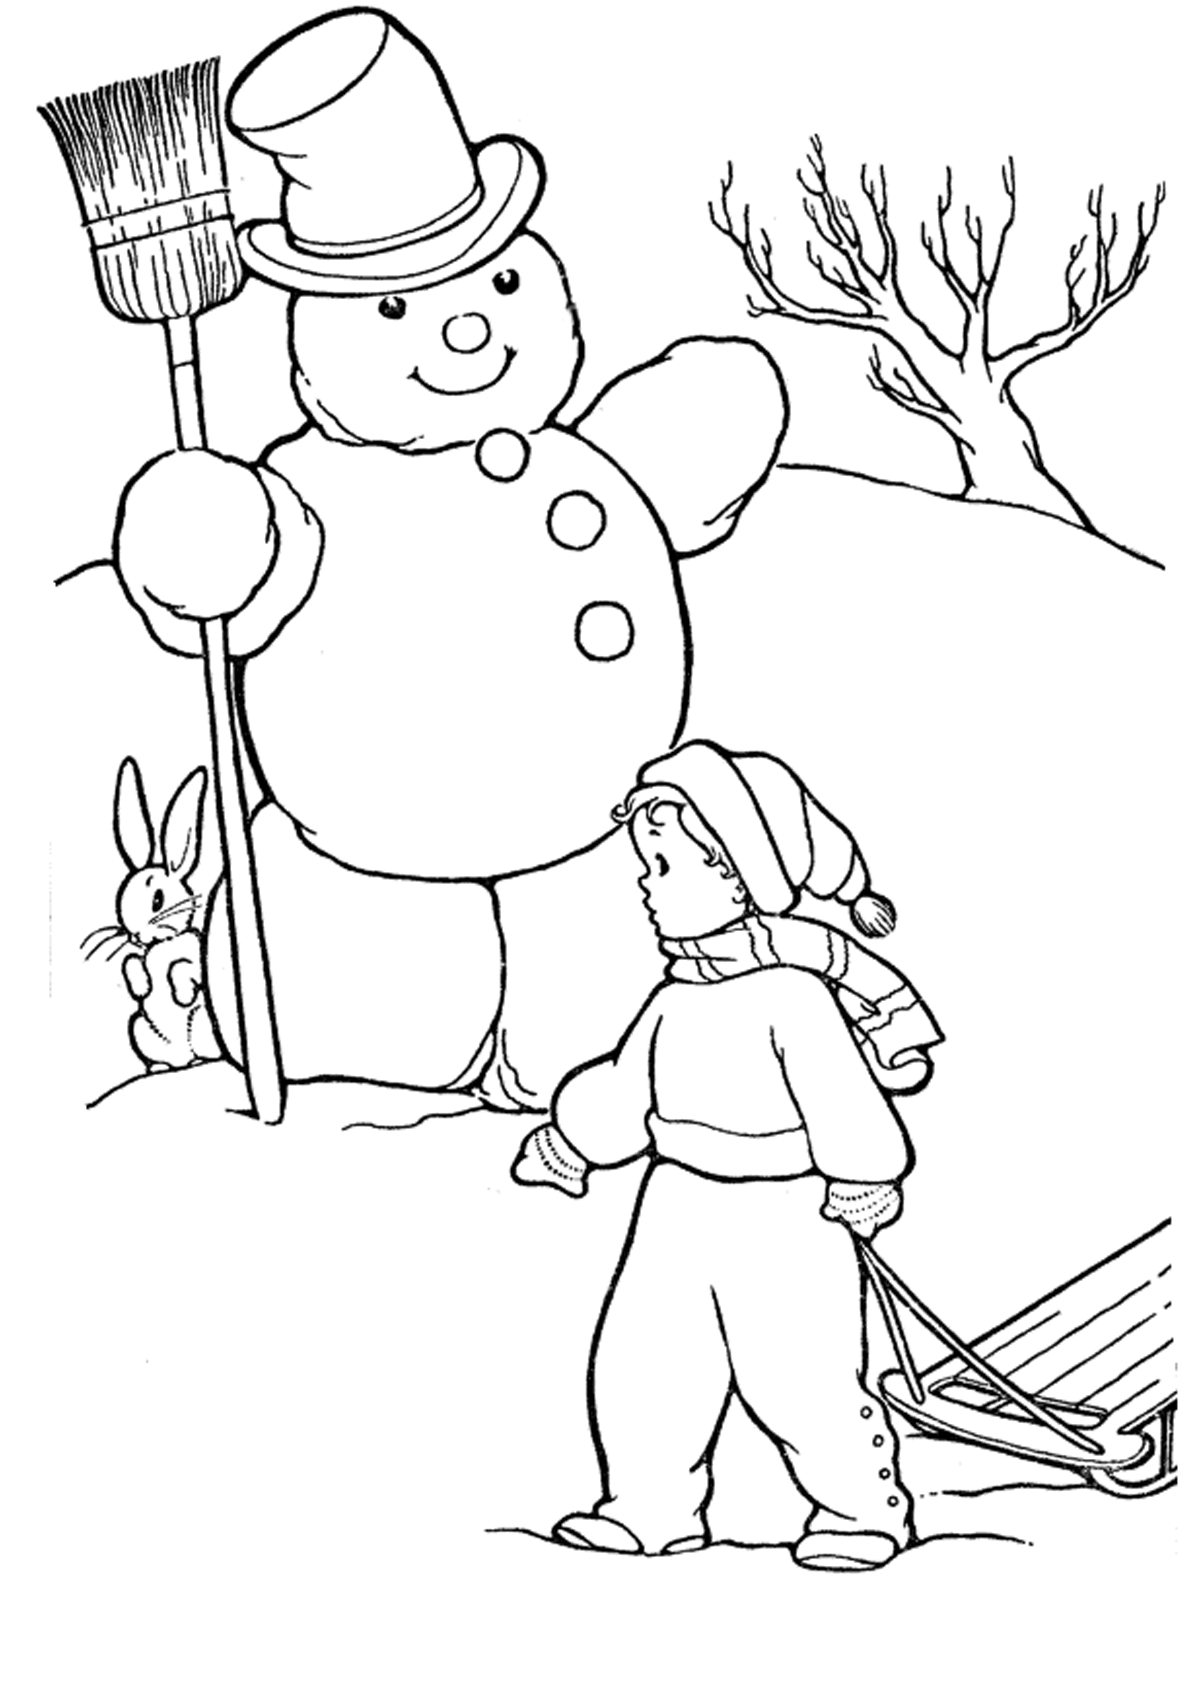 Раскраски зайцы, зайчиха, зайчонок  Зимние раскраски, снеговик в шляпе с метлой, заяц прячется за снеговиком, мальчик с санками, дерево без листьев